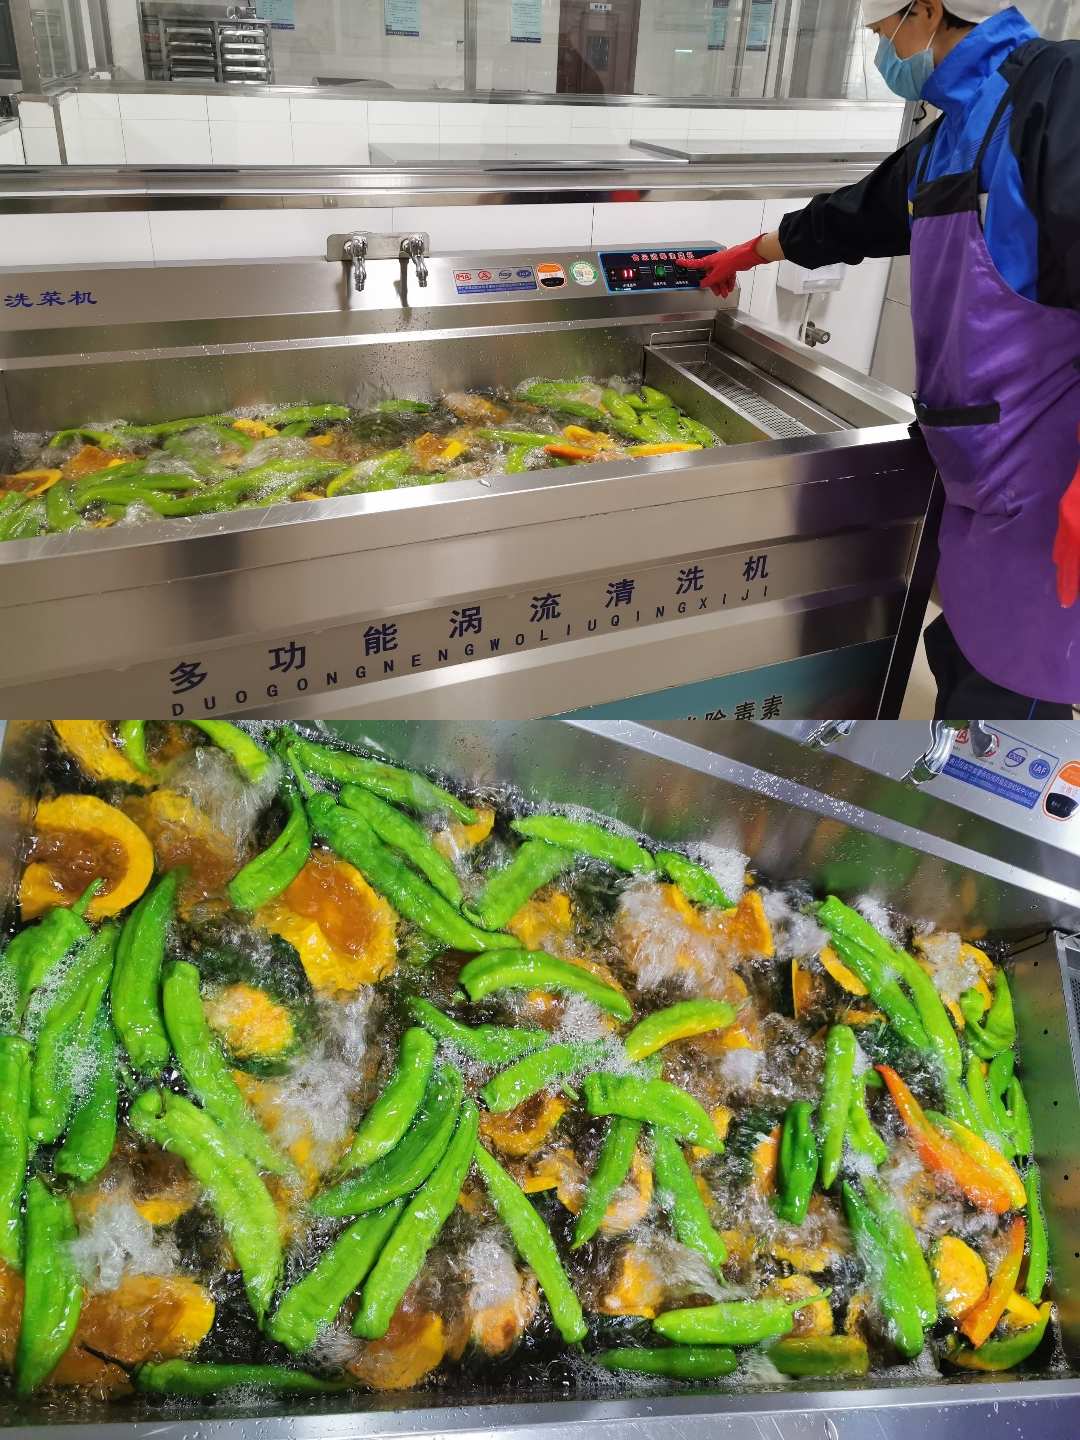 副食品加工烹调过程中错误的是 蔬菜先洗后切_蔬菜加工过程中不应该_蔬菜加工中先切后洗